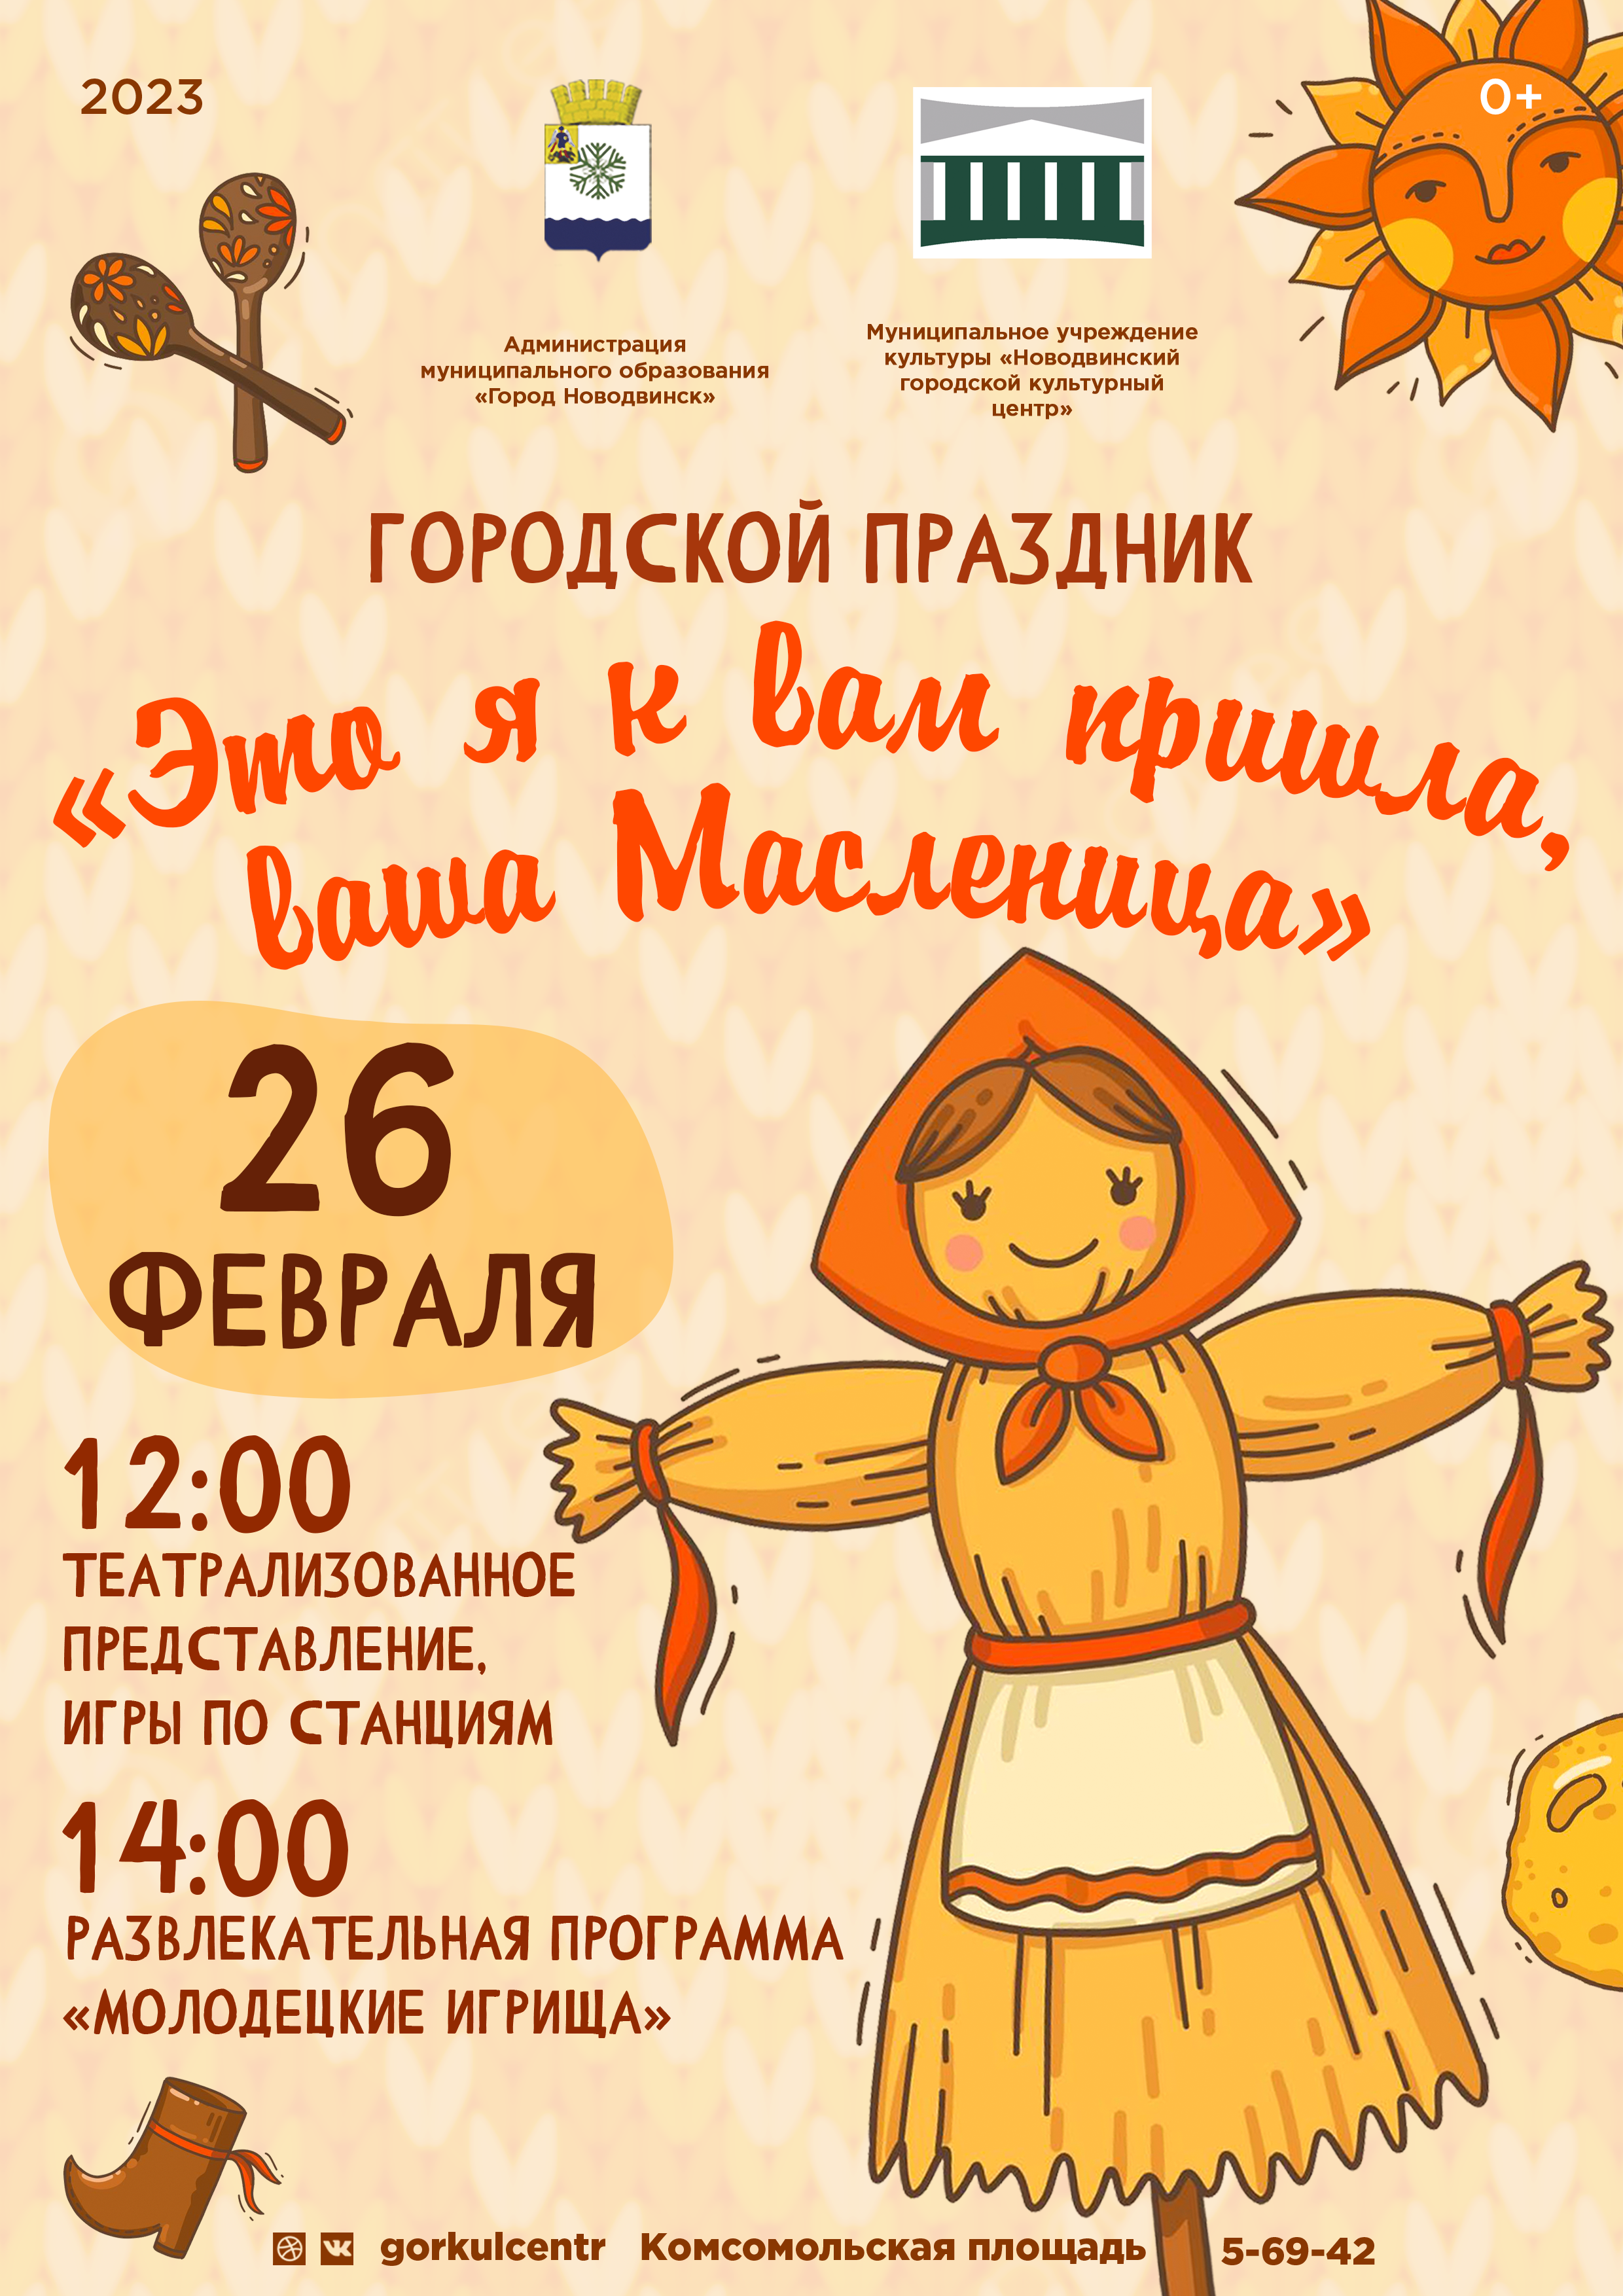 Новодвинский городской культурный центр приглашает на городской праздник «Это я к вам пришла, ваша Масленица»!